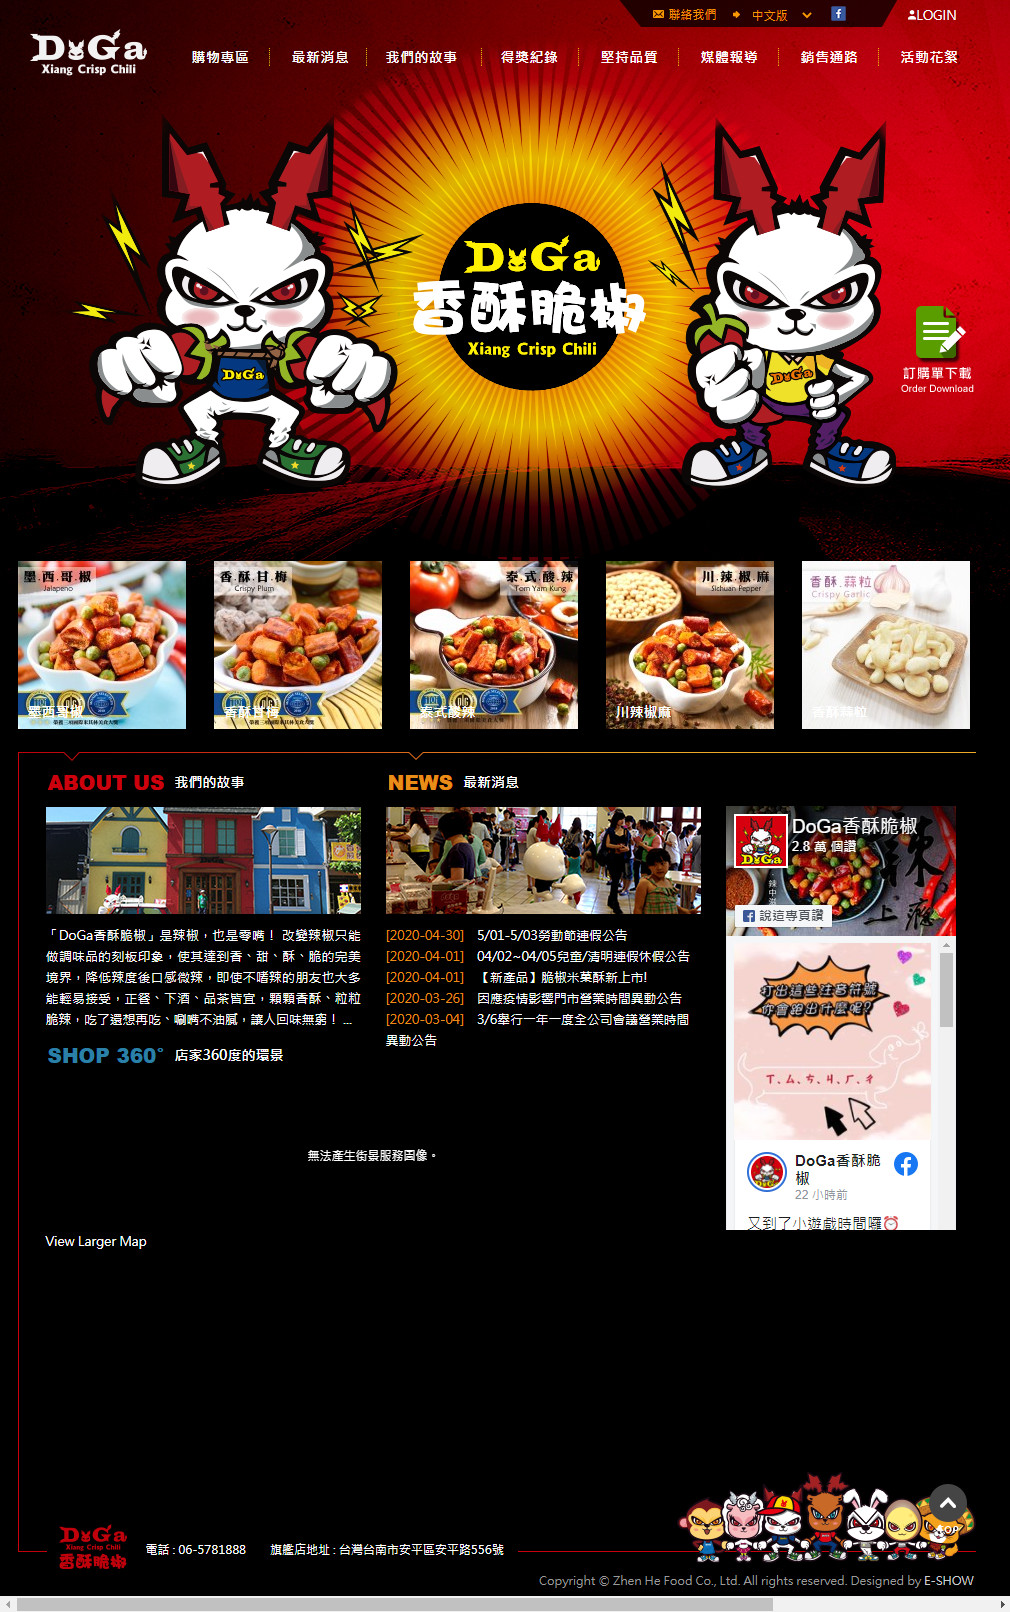 doga香酥脆椒 購物+手機版網站設計
網站設計